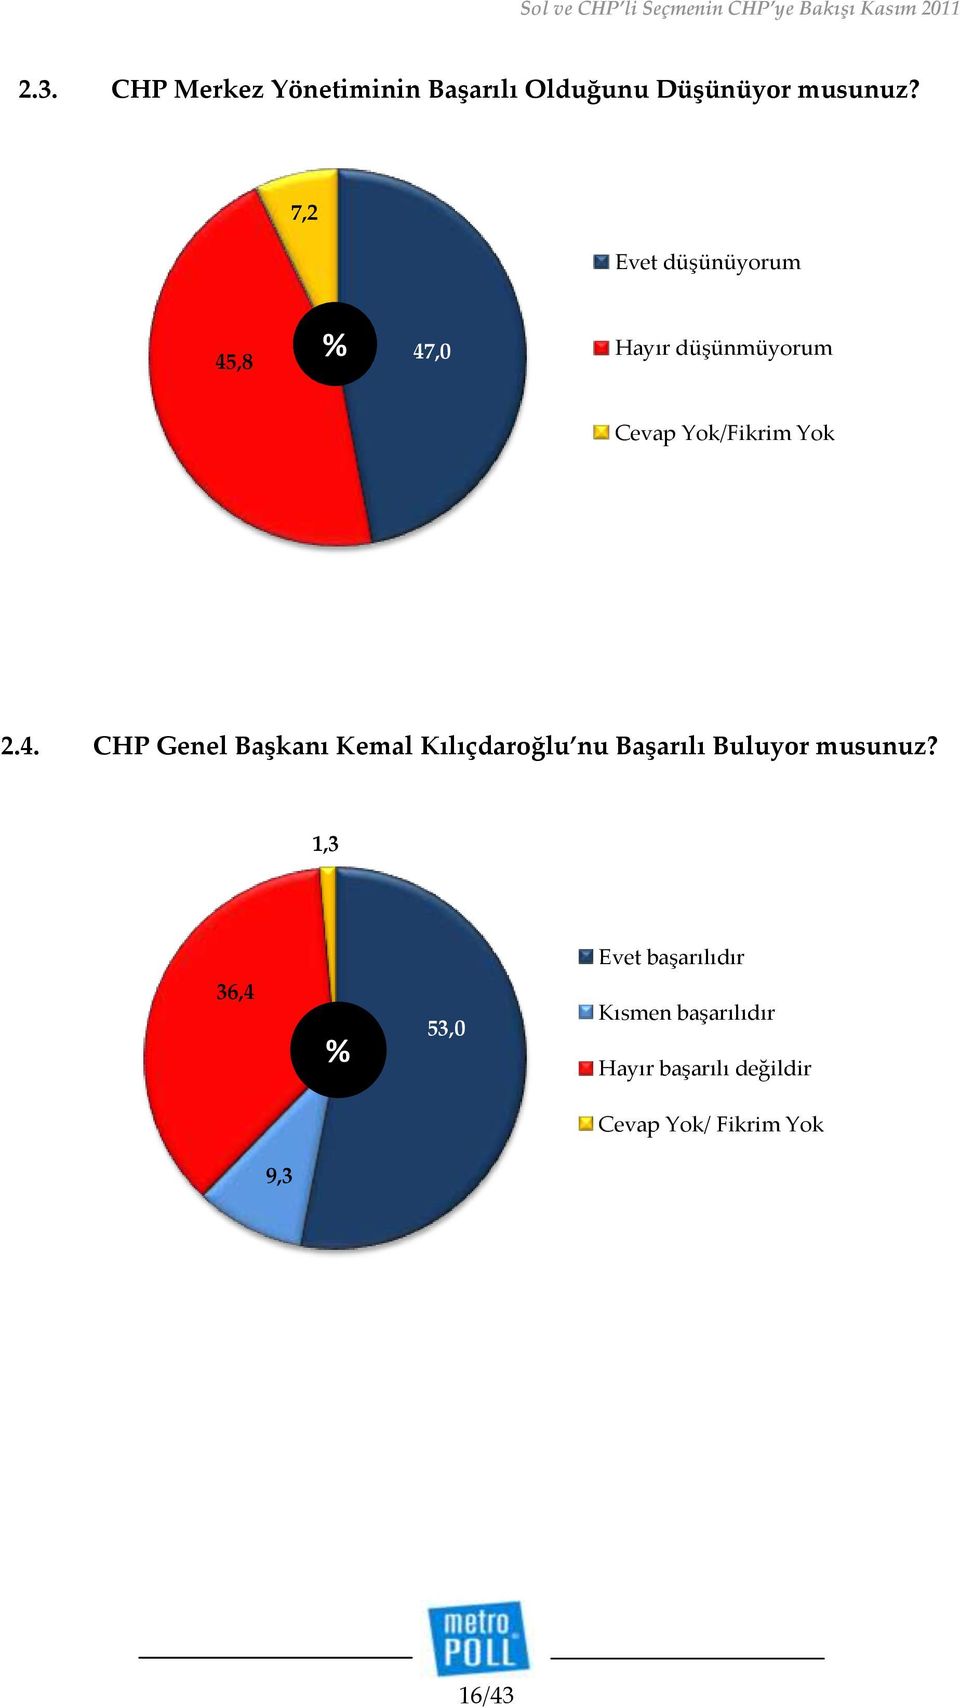 ,8 47,0 Hayır düşünmüyorum 2.4. CHP Genel Başkanı Kemal Kılıçdaroğlu nu Başarılı Buluyor musunuz?